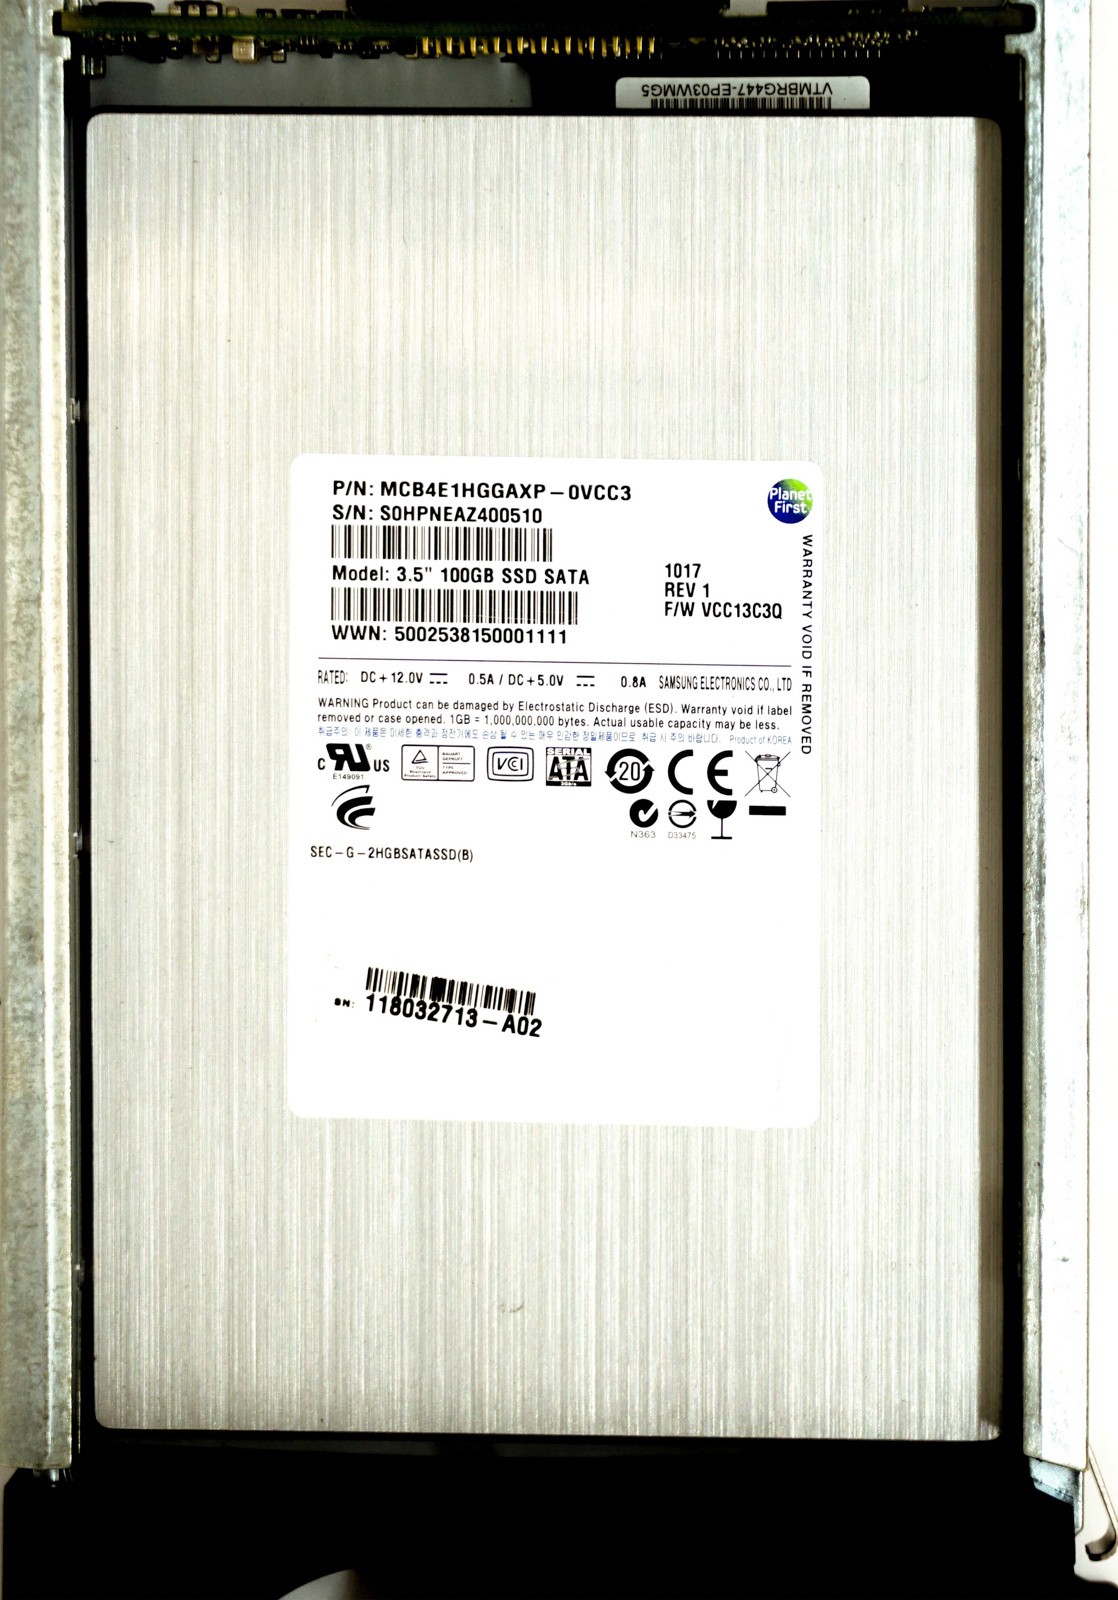 EMC (118032713) 100GB FCAL (LFF) 6Gb/s SSD in Hot-Swap Caddy